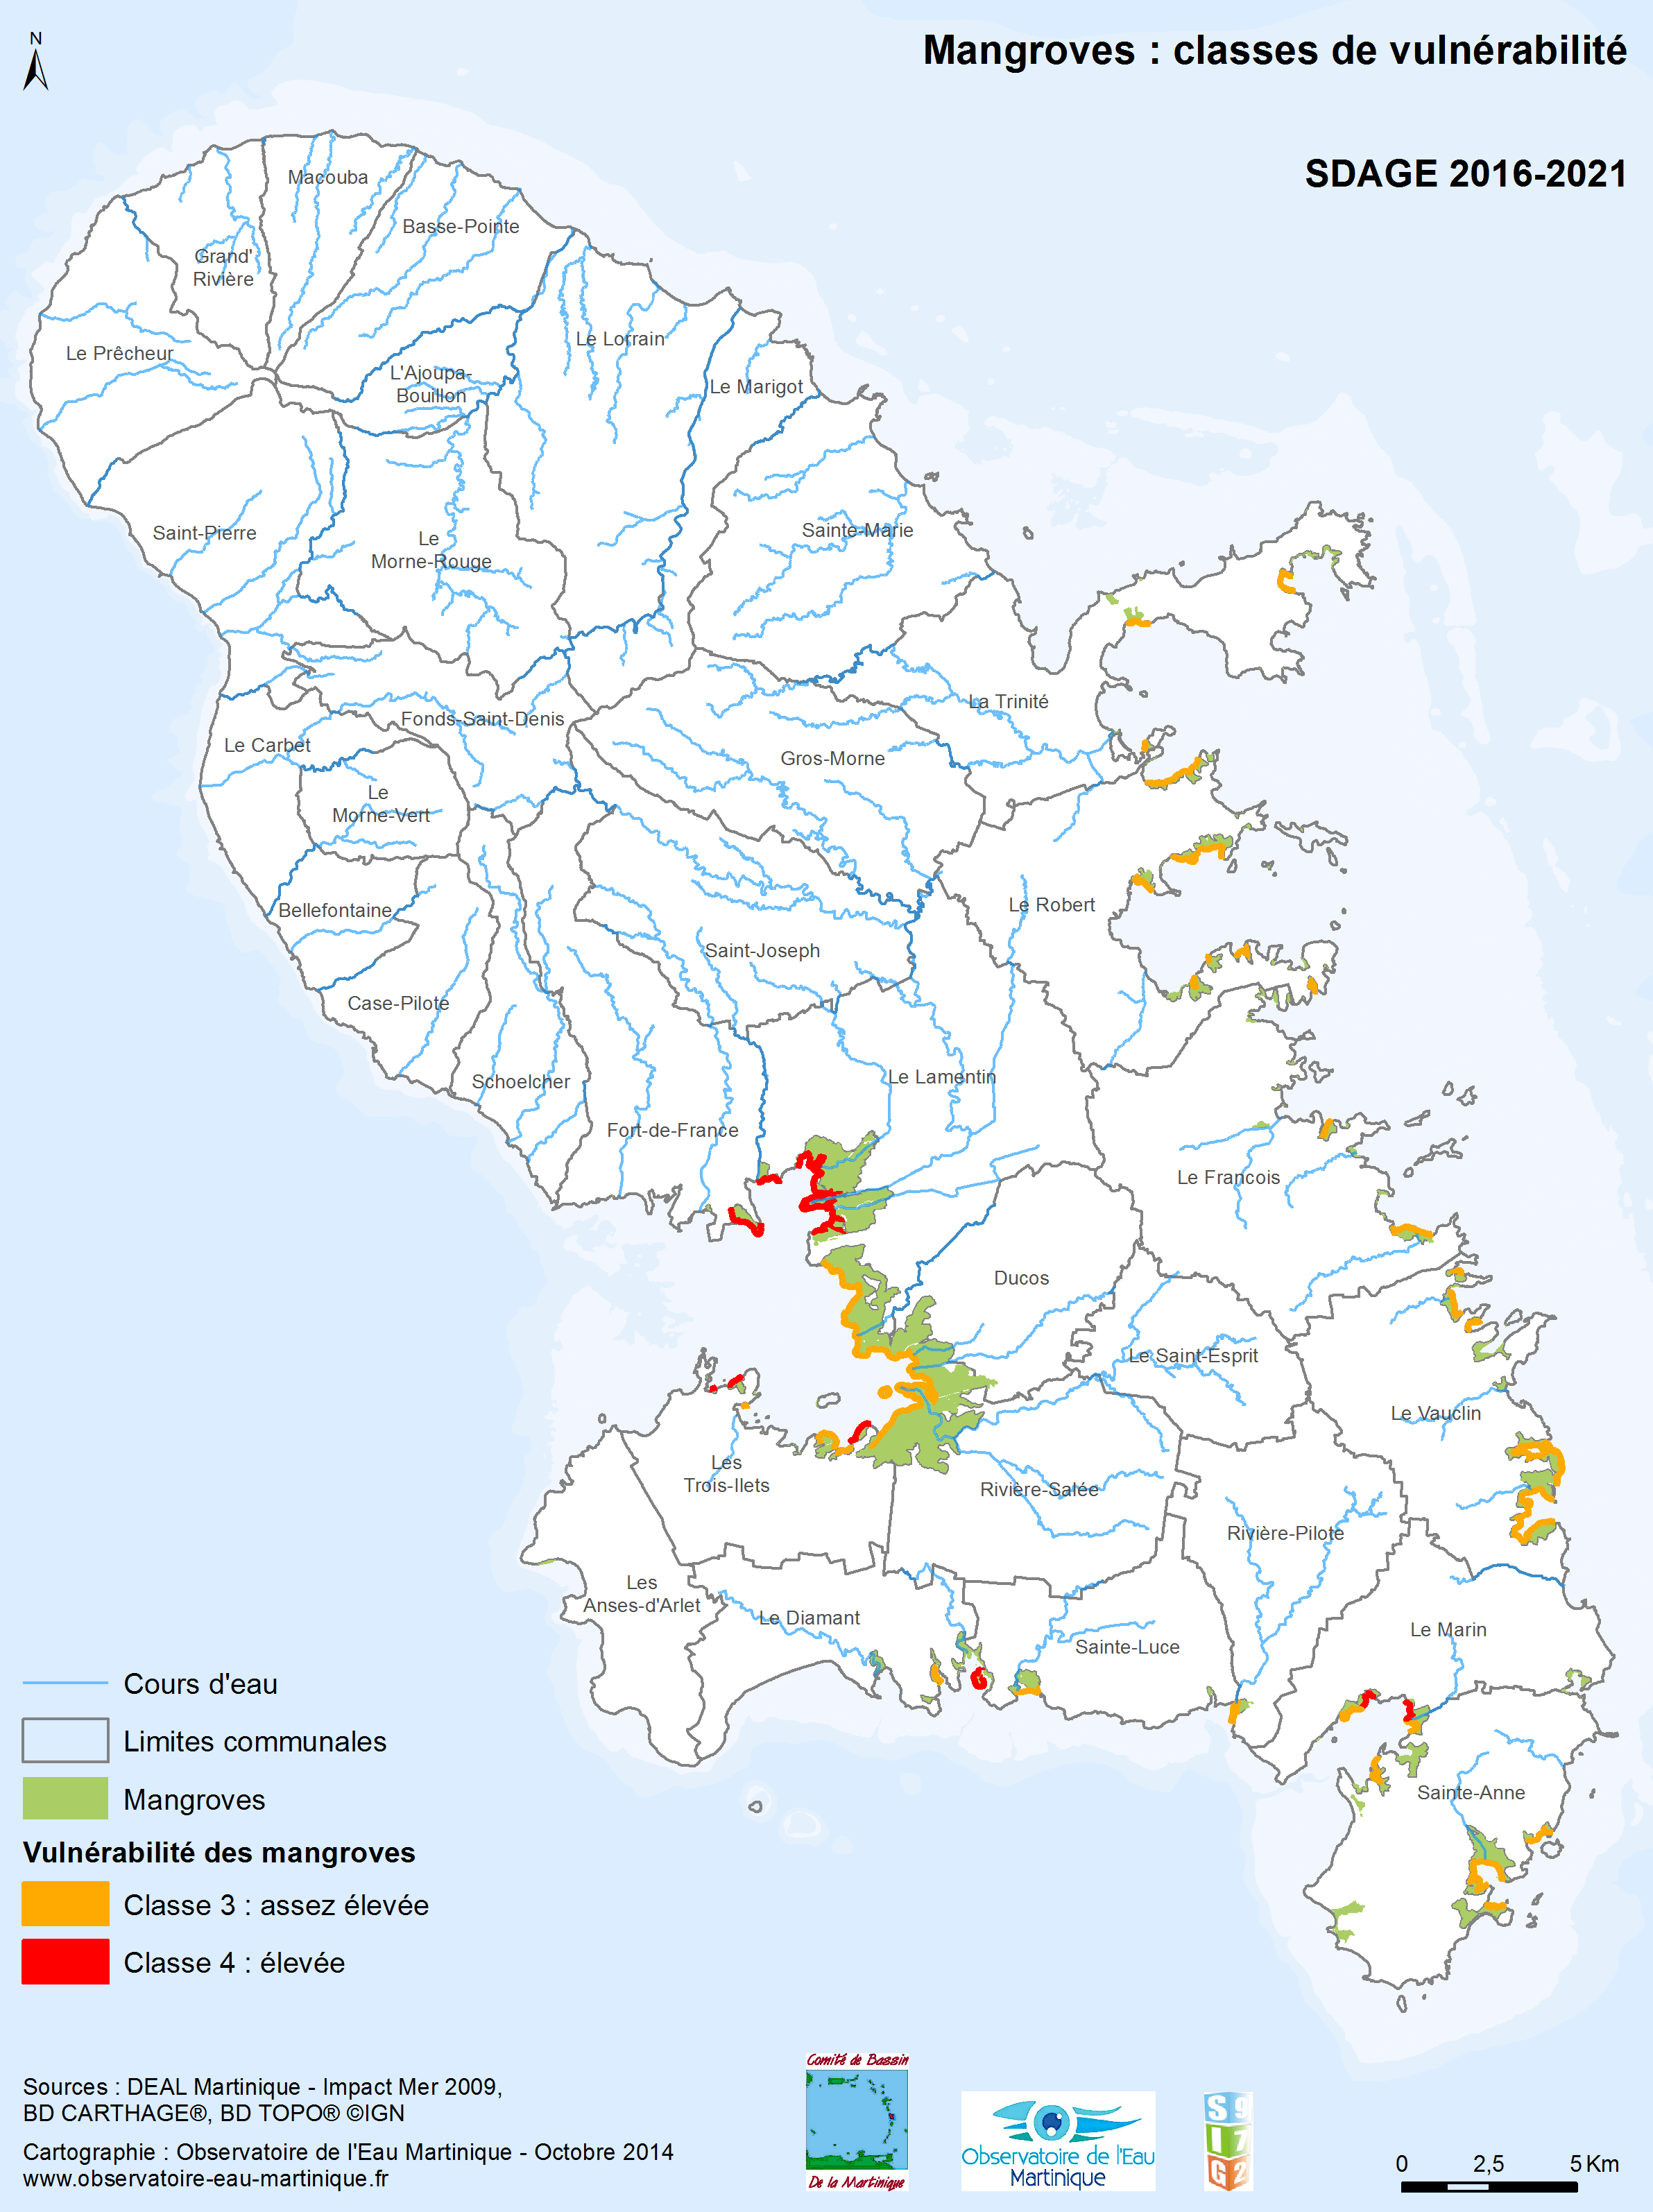 SDAGE 2016-2021 - Mangroves : classe de vulnérabilité